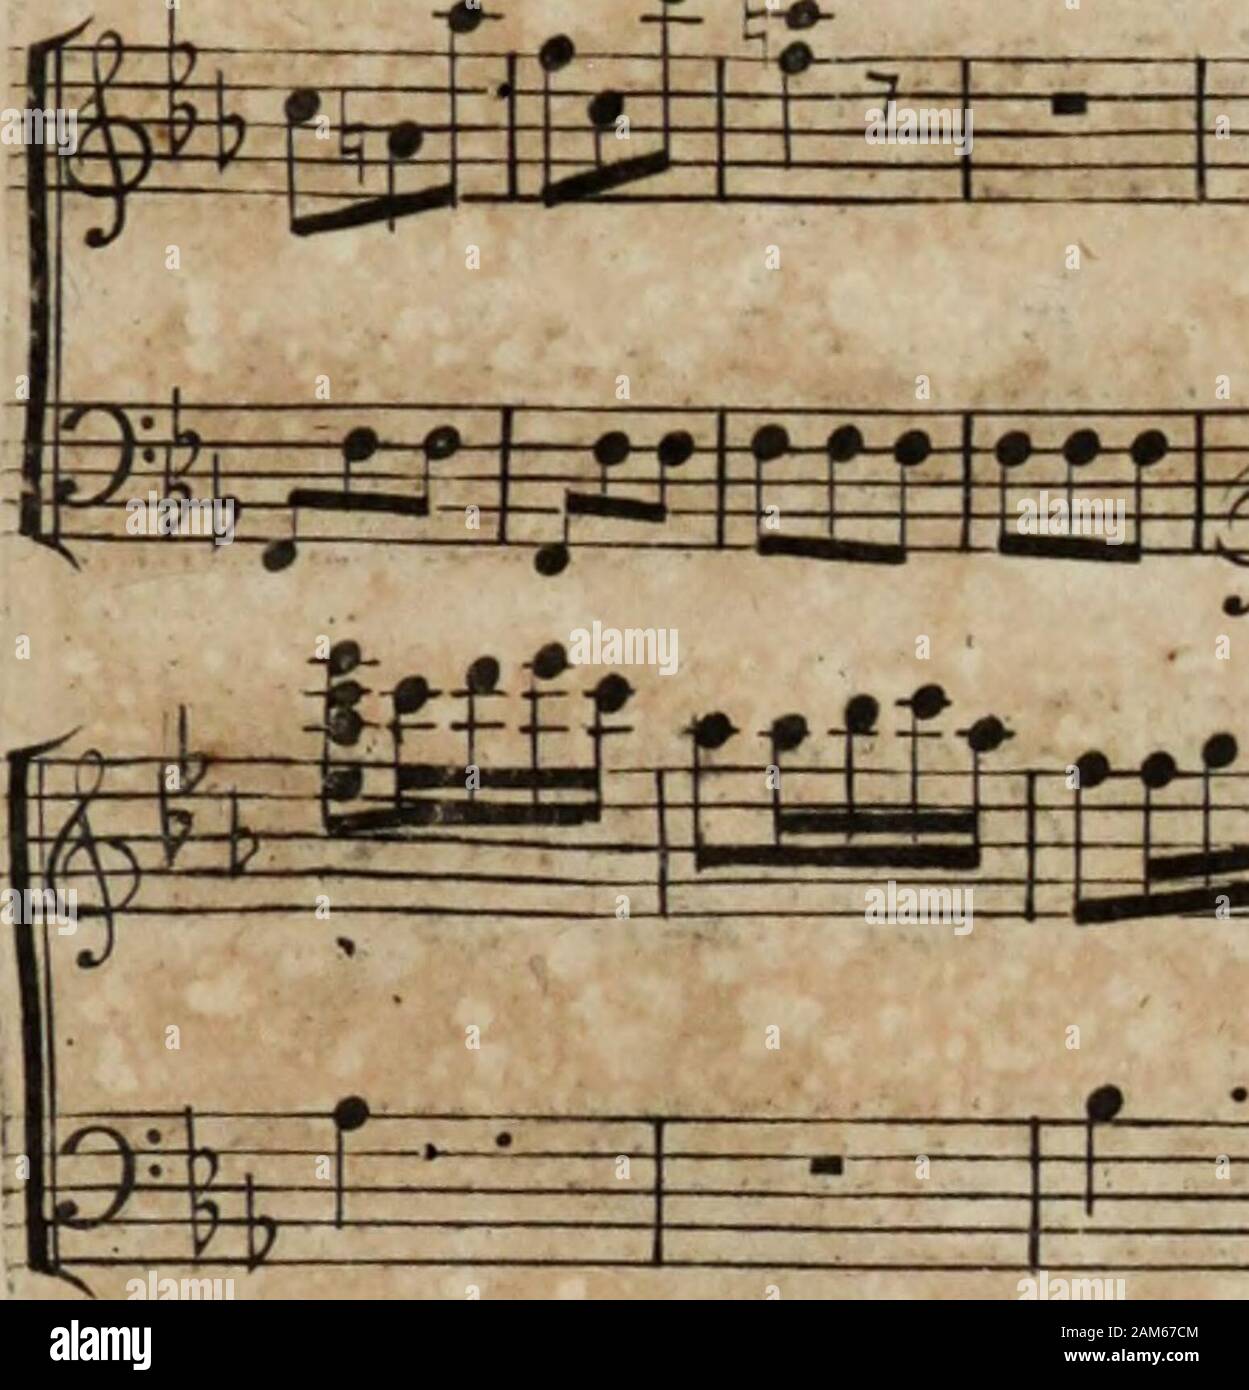 Six sonates pour la harpe avec un accompagnement de violon ad libitum, ouevre I . ip5p§KP £* 3= 3^ *-#-» m *. *j.. NfnH-^Vih fffifrnjjuirnuCifjiffiiiPijniir^ Stock Photo